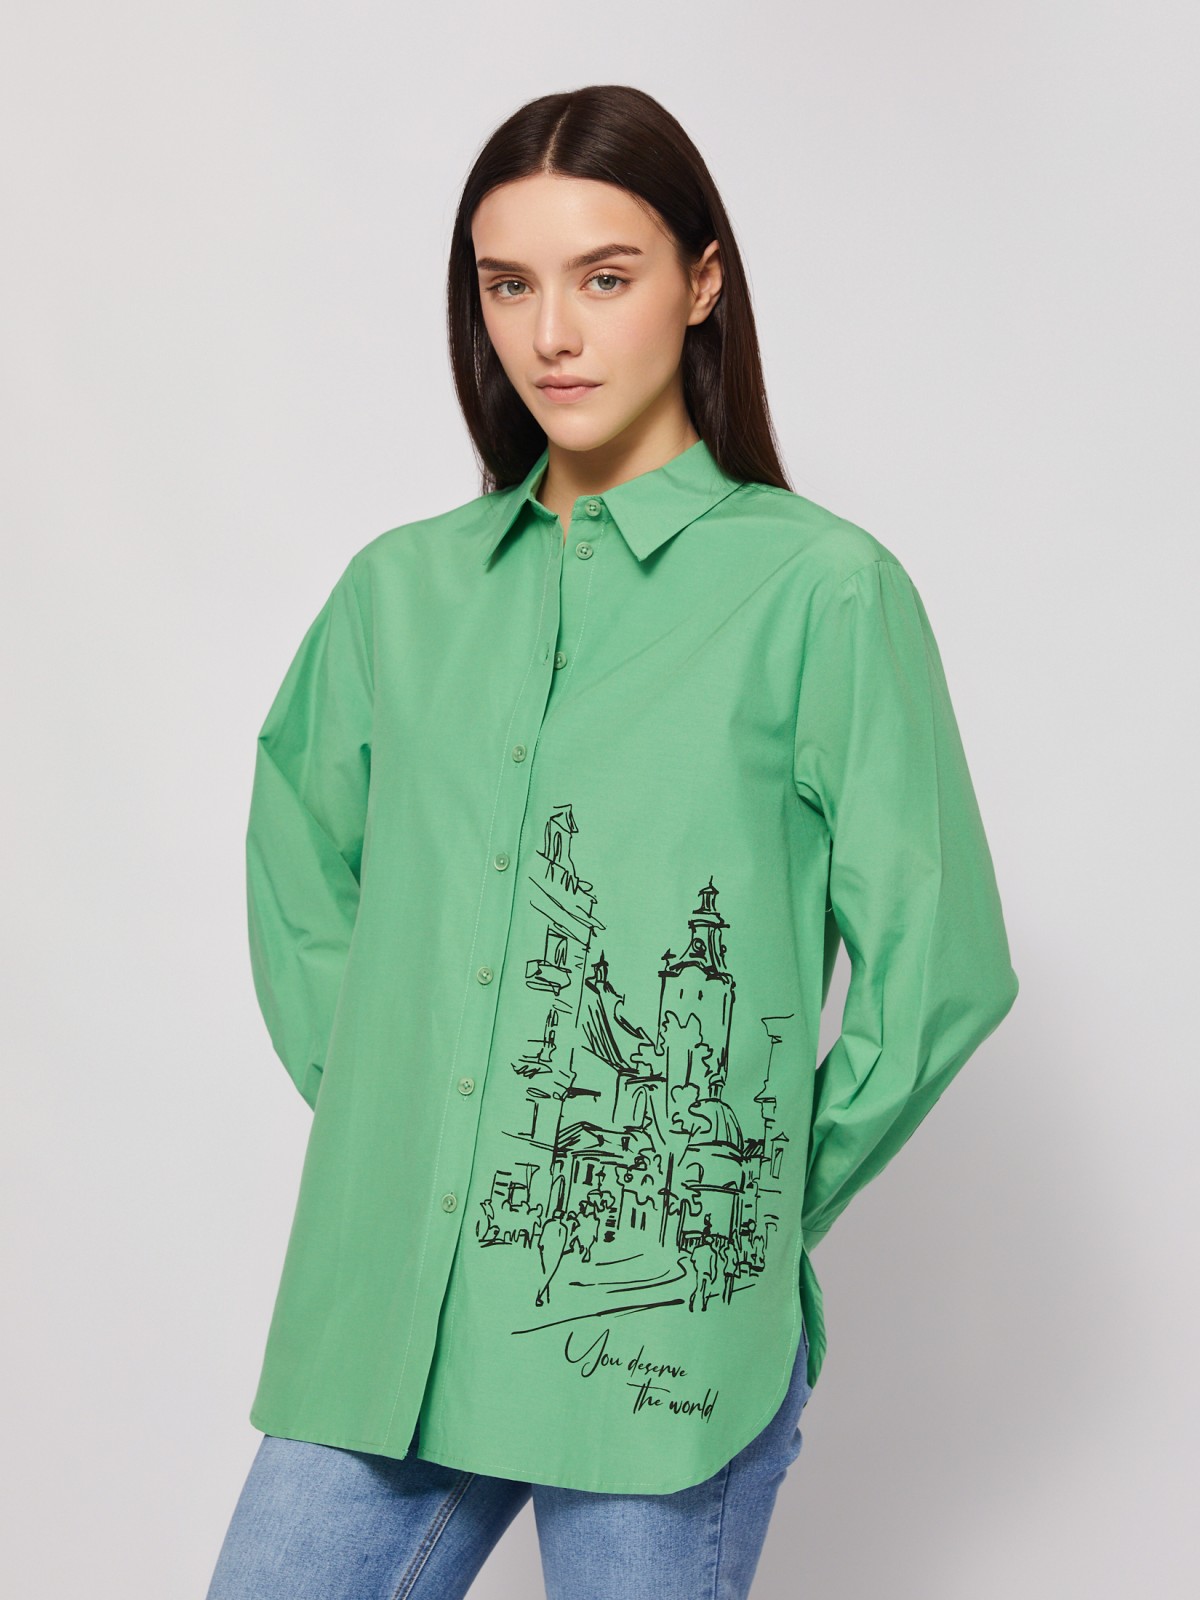 Рубашка прямого фасона с принтом zolla 024221159313, цвет зеленый, размер M - фото 1